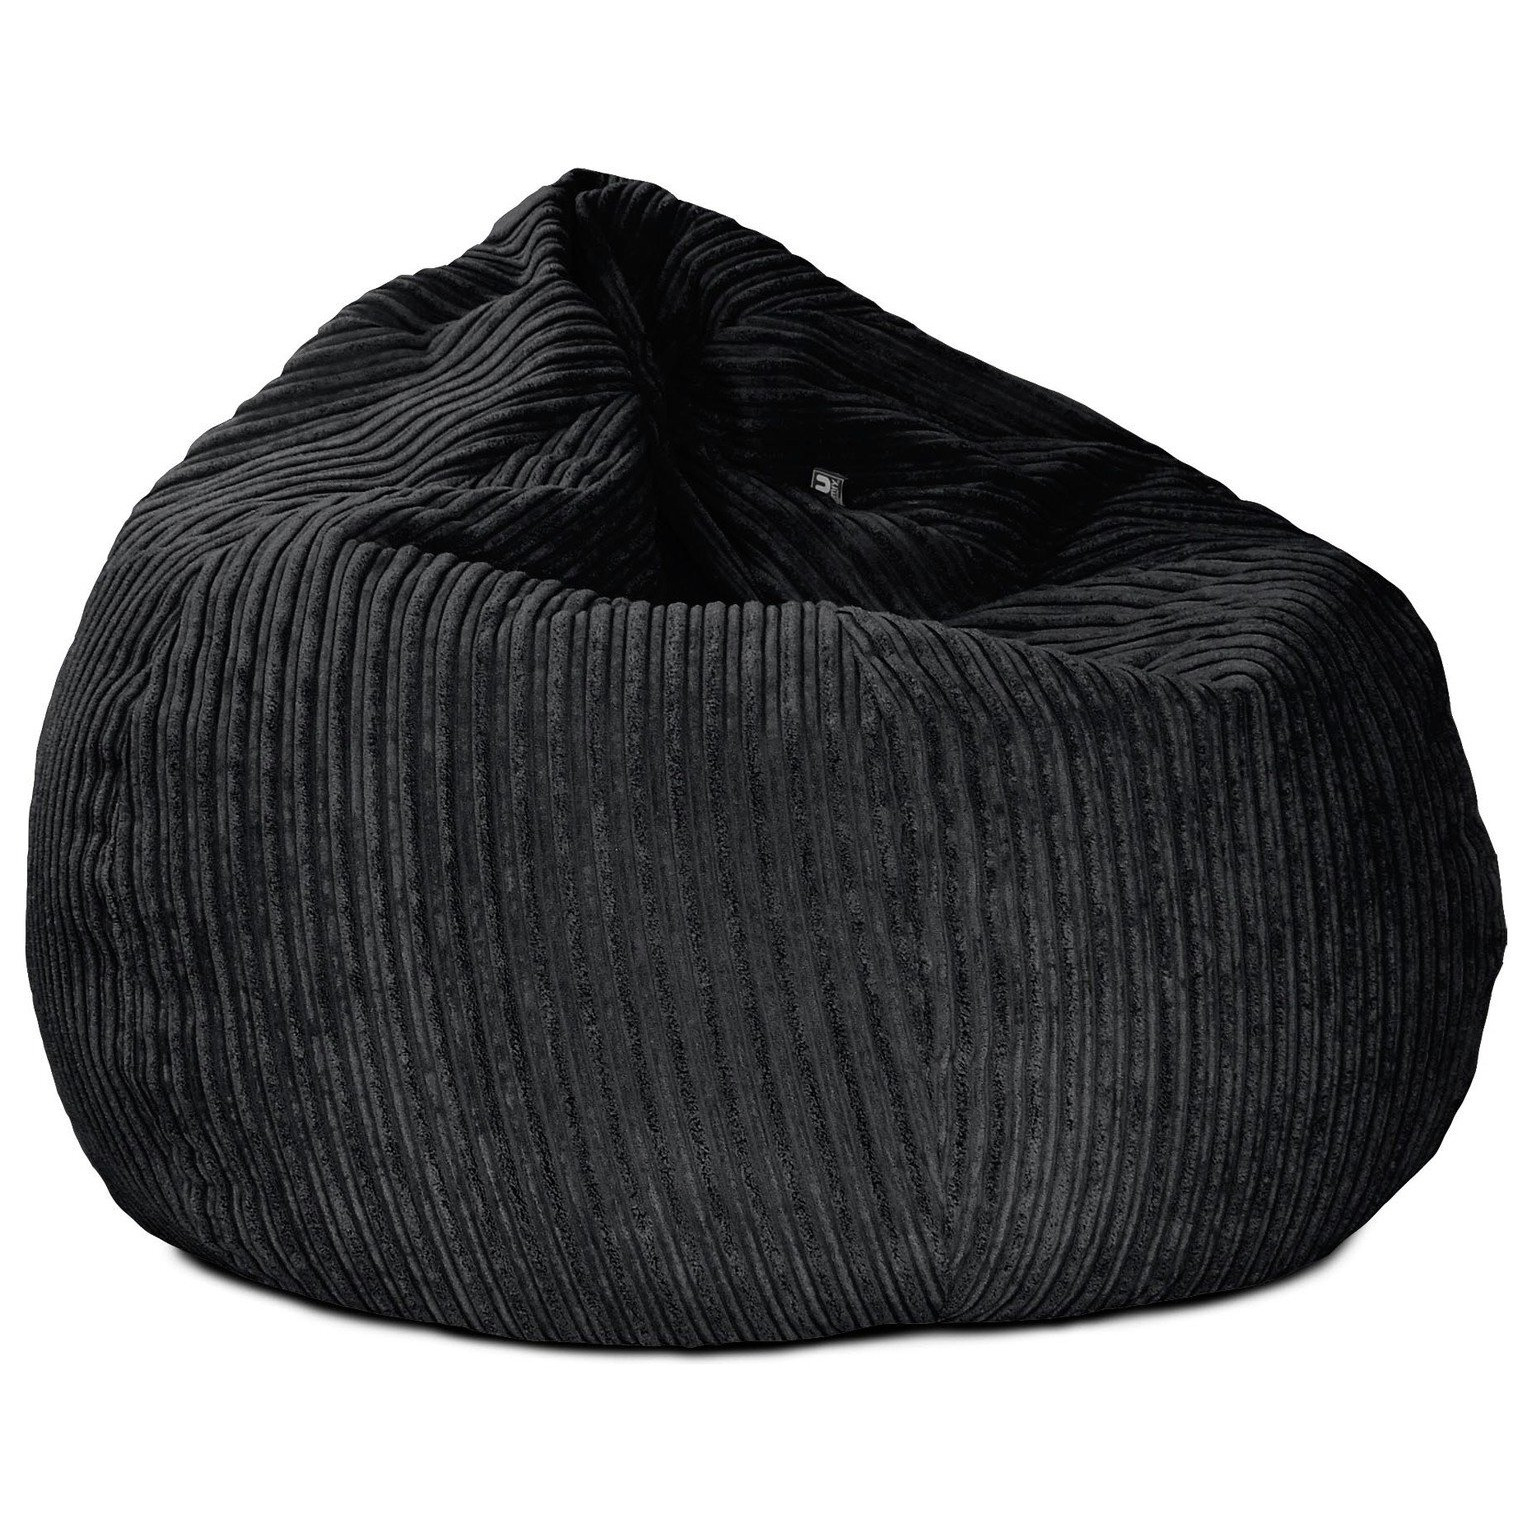 rucomfy Jumbo Cord Slouchbag Bean Bag - Black - image 1